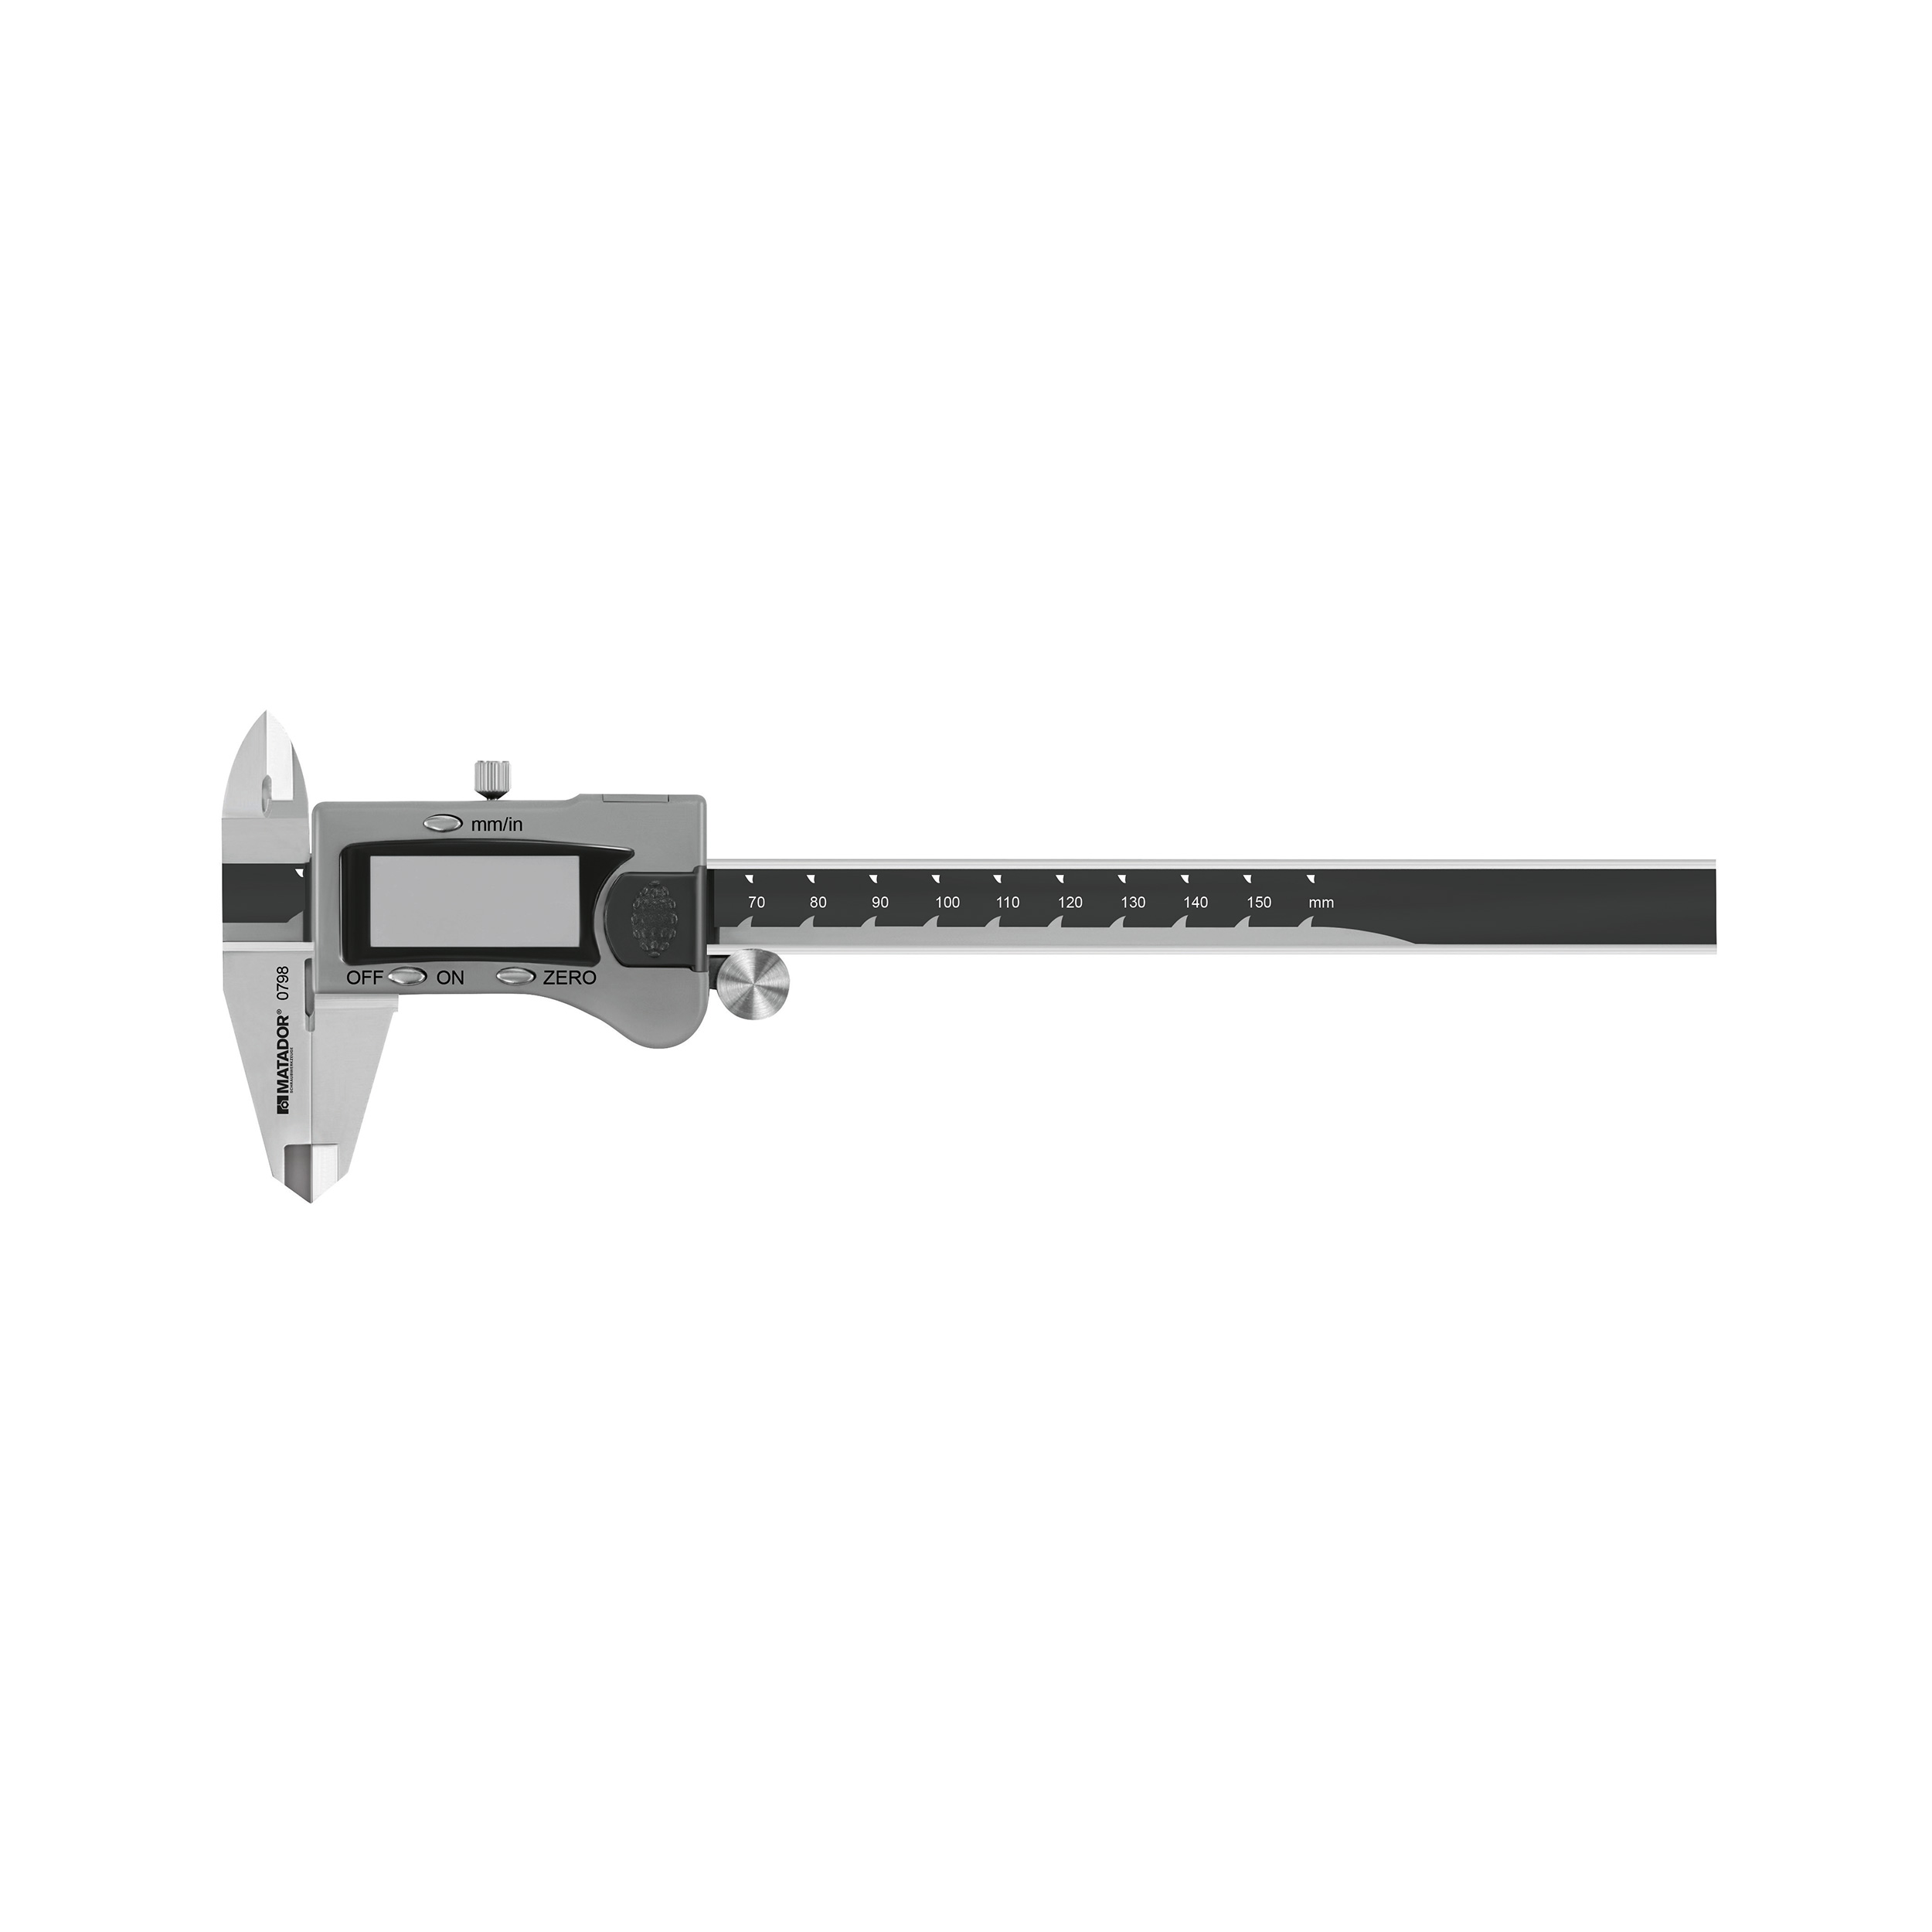 Digital pocket caliper, 150 mm, MATADOR item no.: 07985020